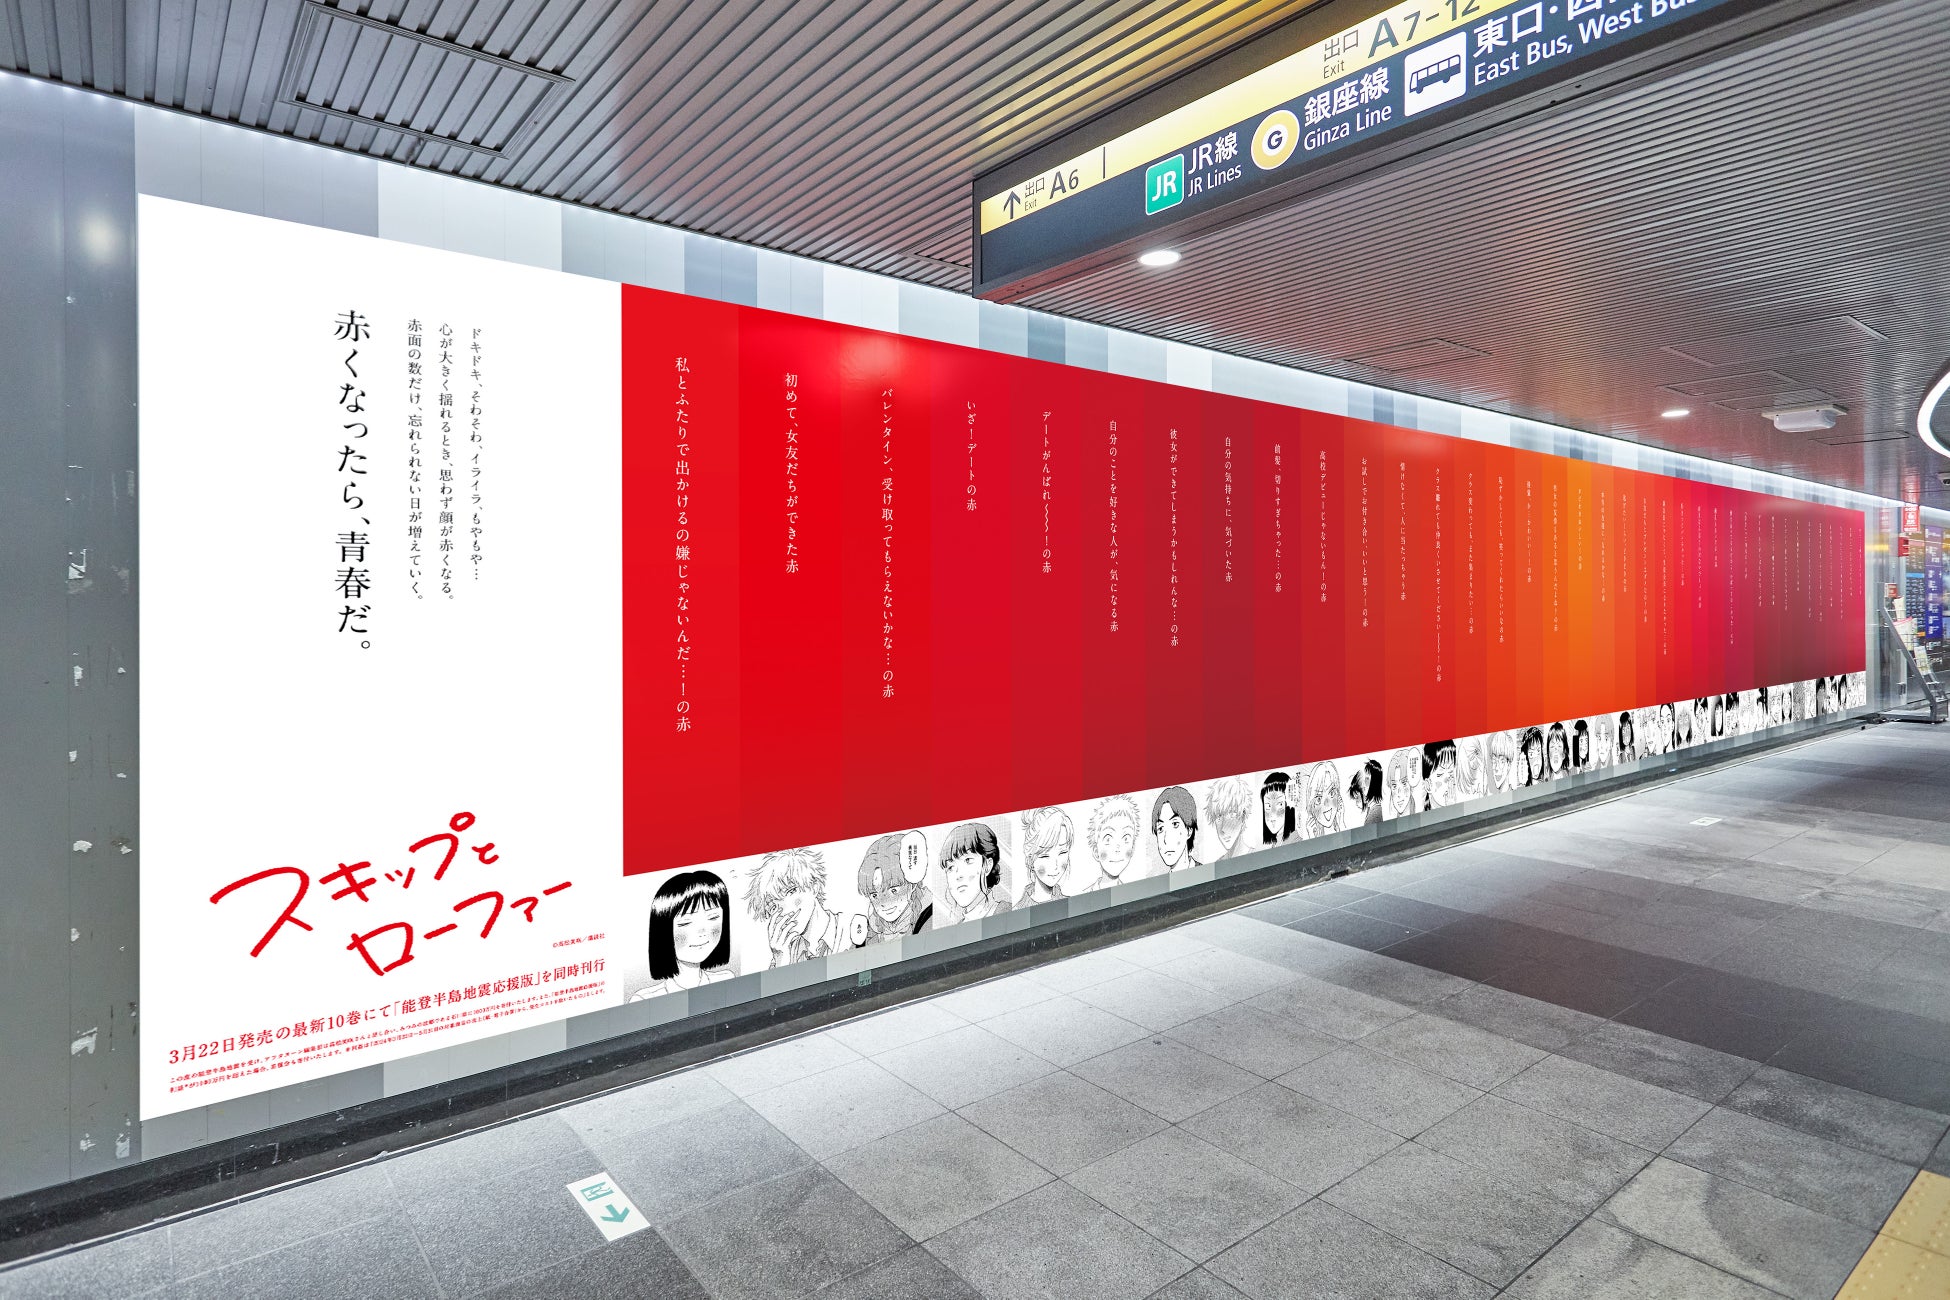 赤面の数だけ、忘れられない日が増えていく。『スキップとローファー』10巻発売を記念して「37色の赤面広告」を掲出！